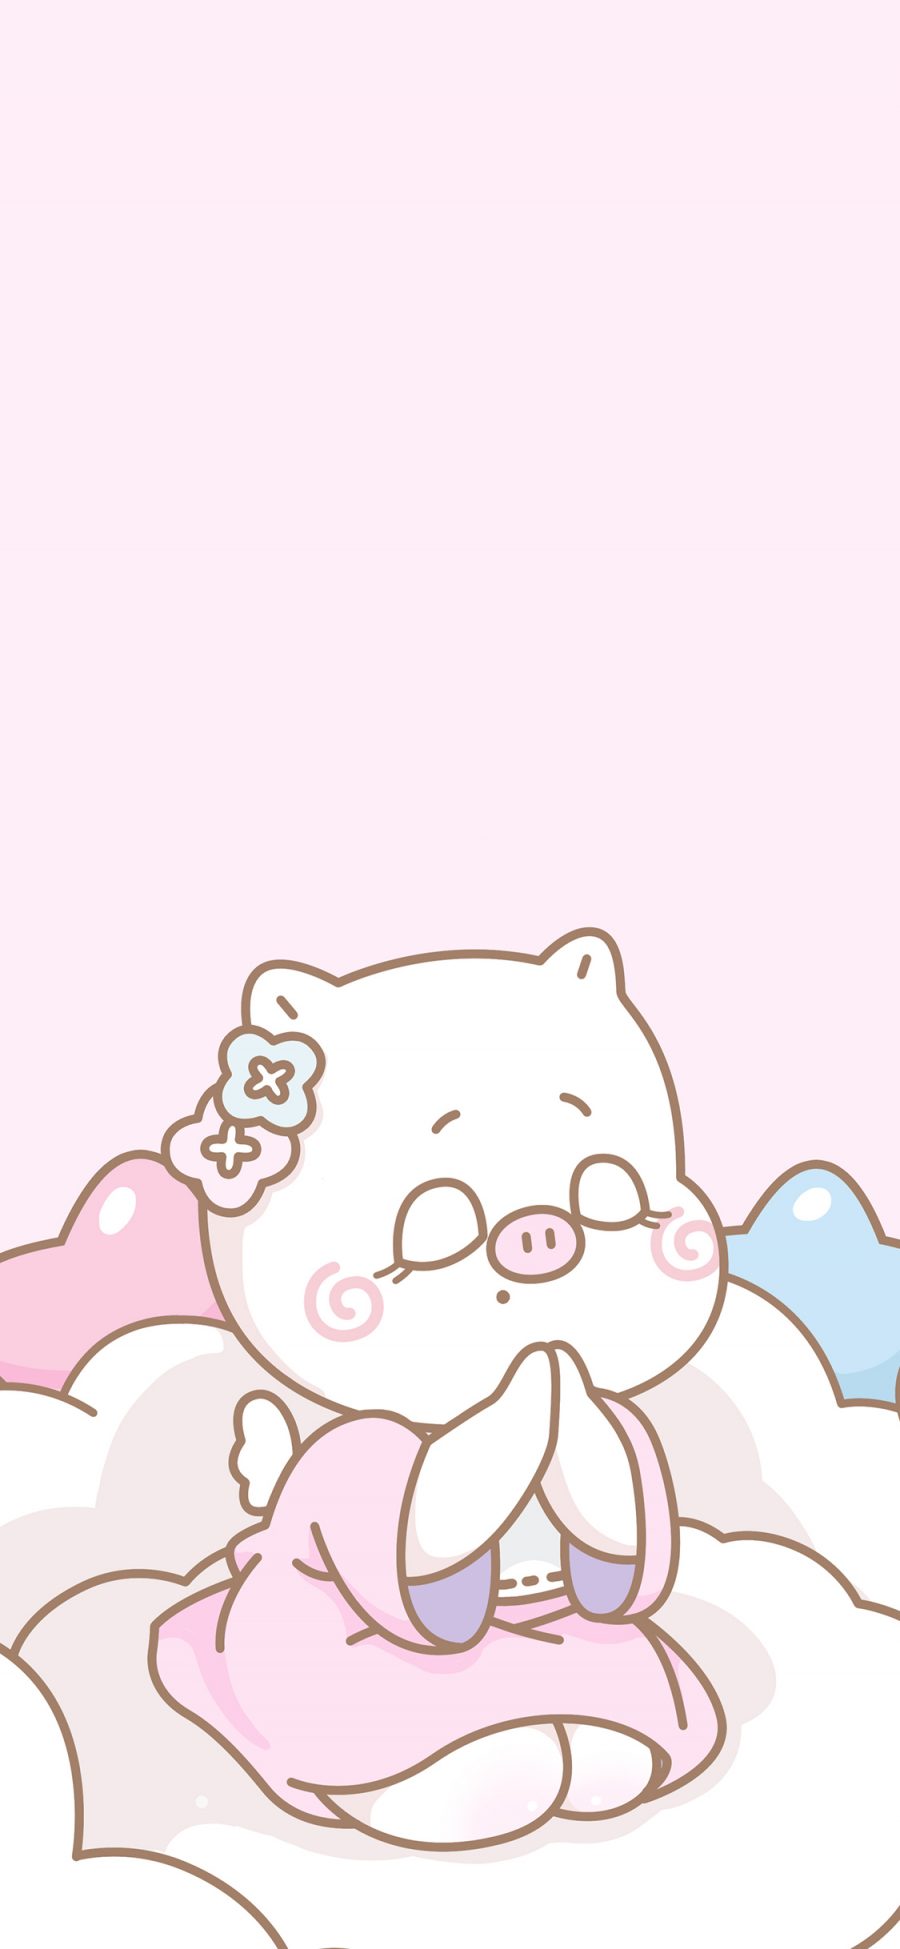 [2436×1125]猪 萌咔便利店 卡通 可爱 祈愿 粉色 苹果手机动漫壁纸图片